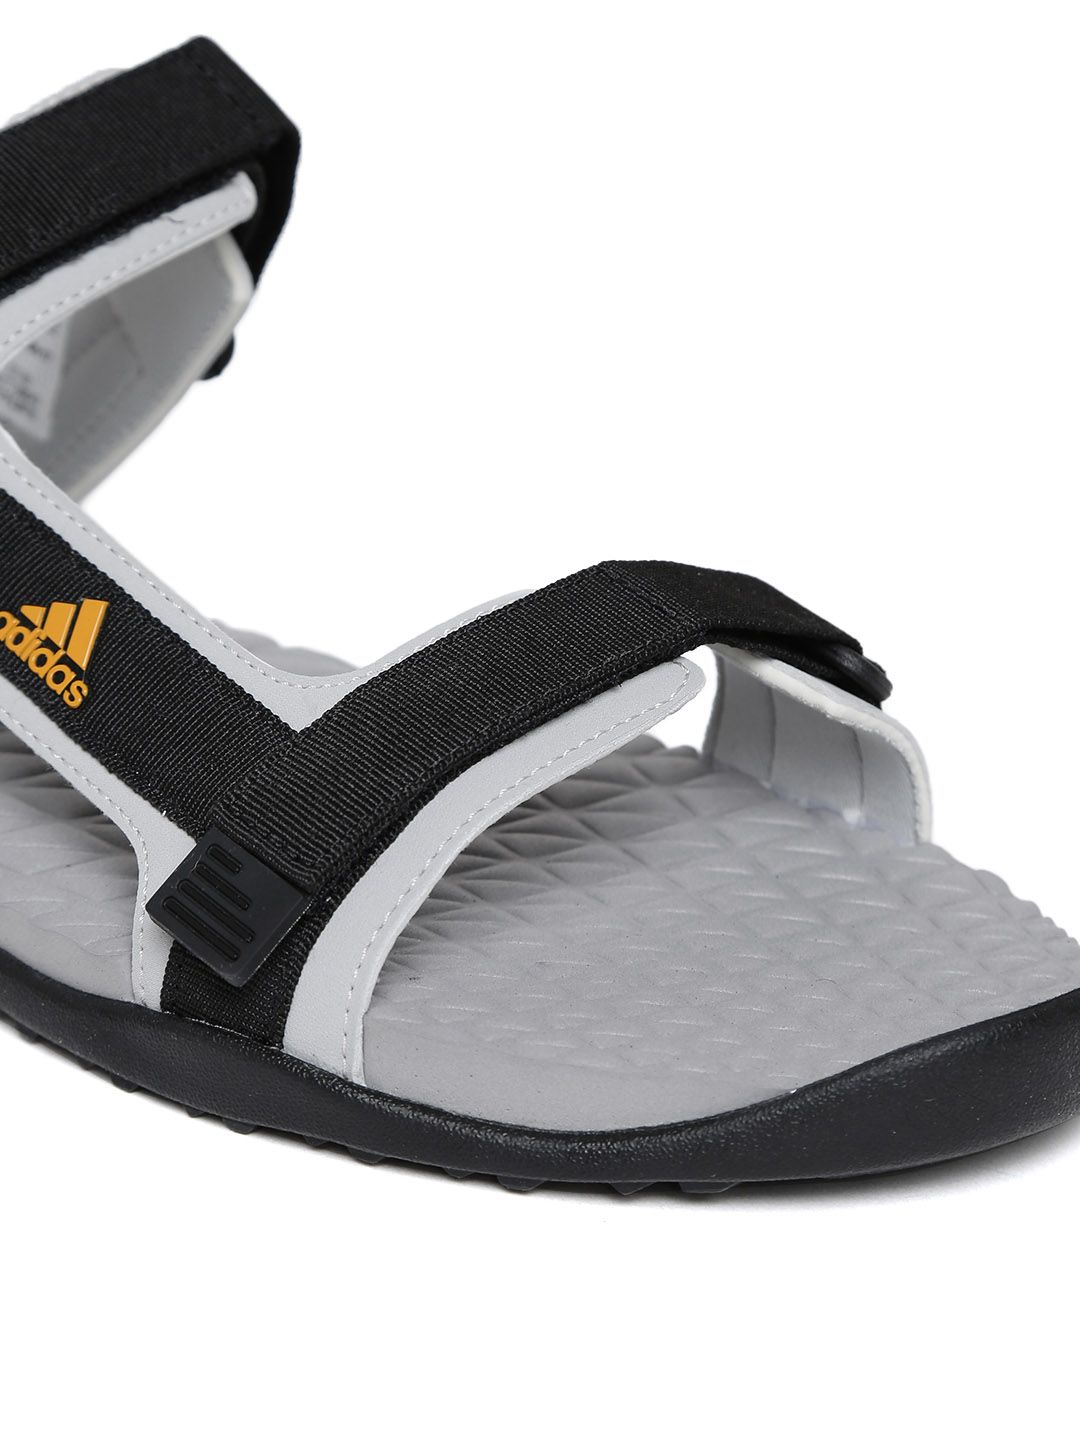 adidas sandals price